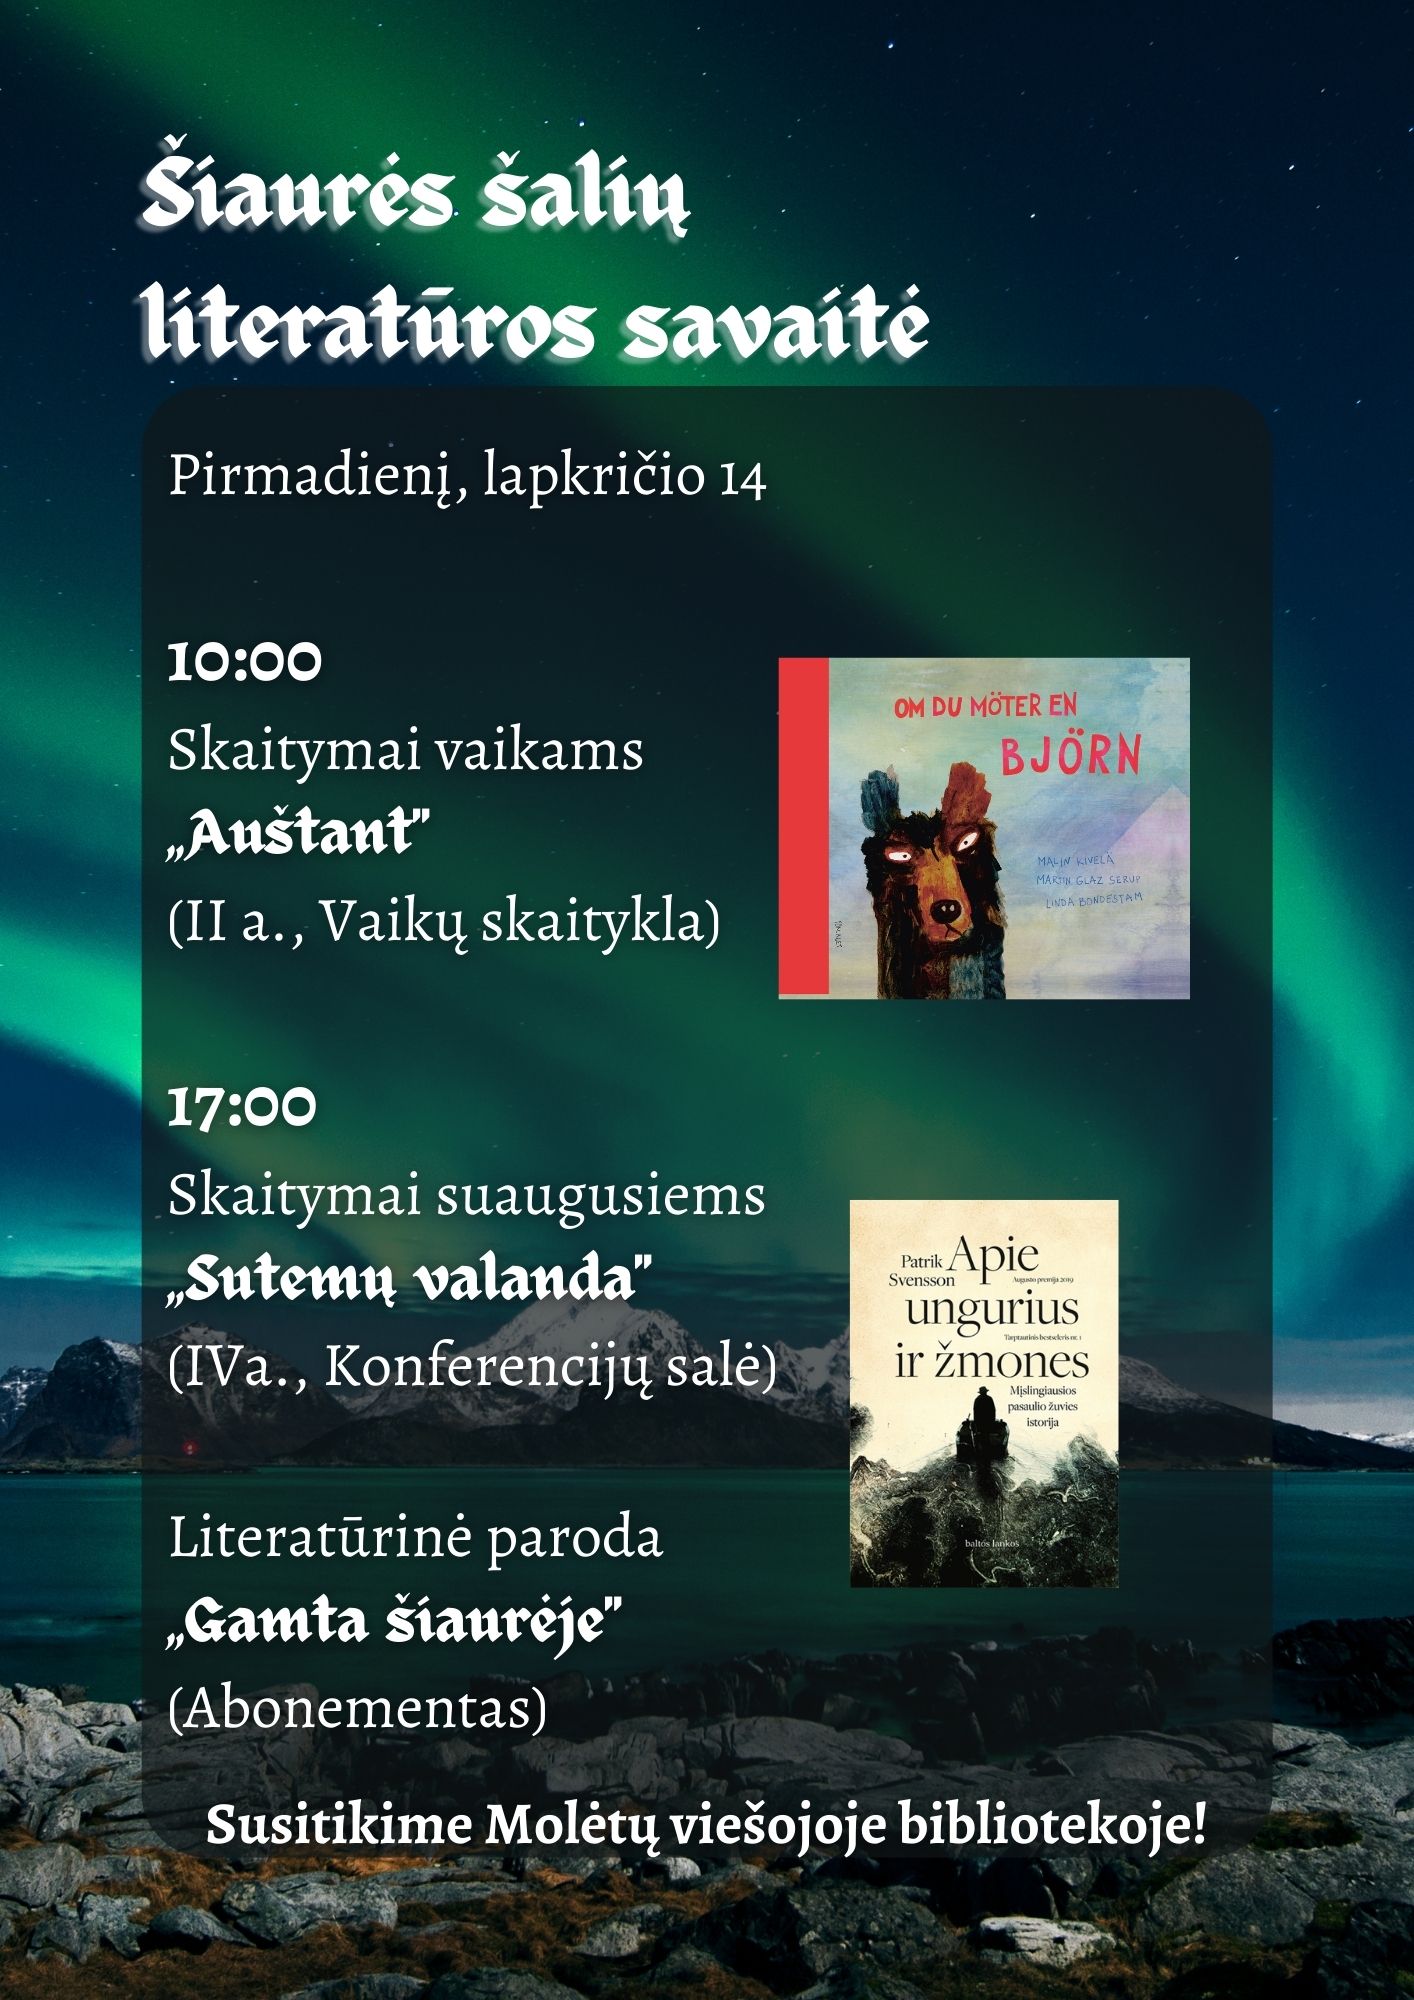 Šiaurės šalių literatūros savaitė 2022 „Gamta šiaurėje“